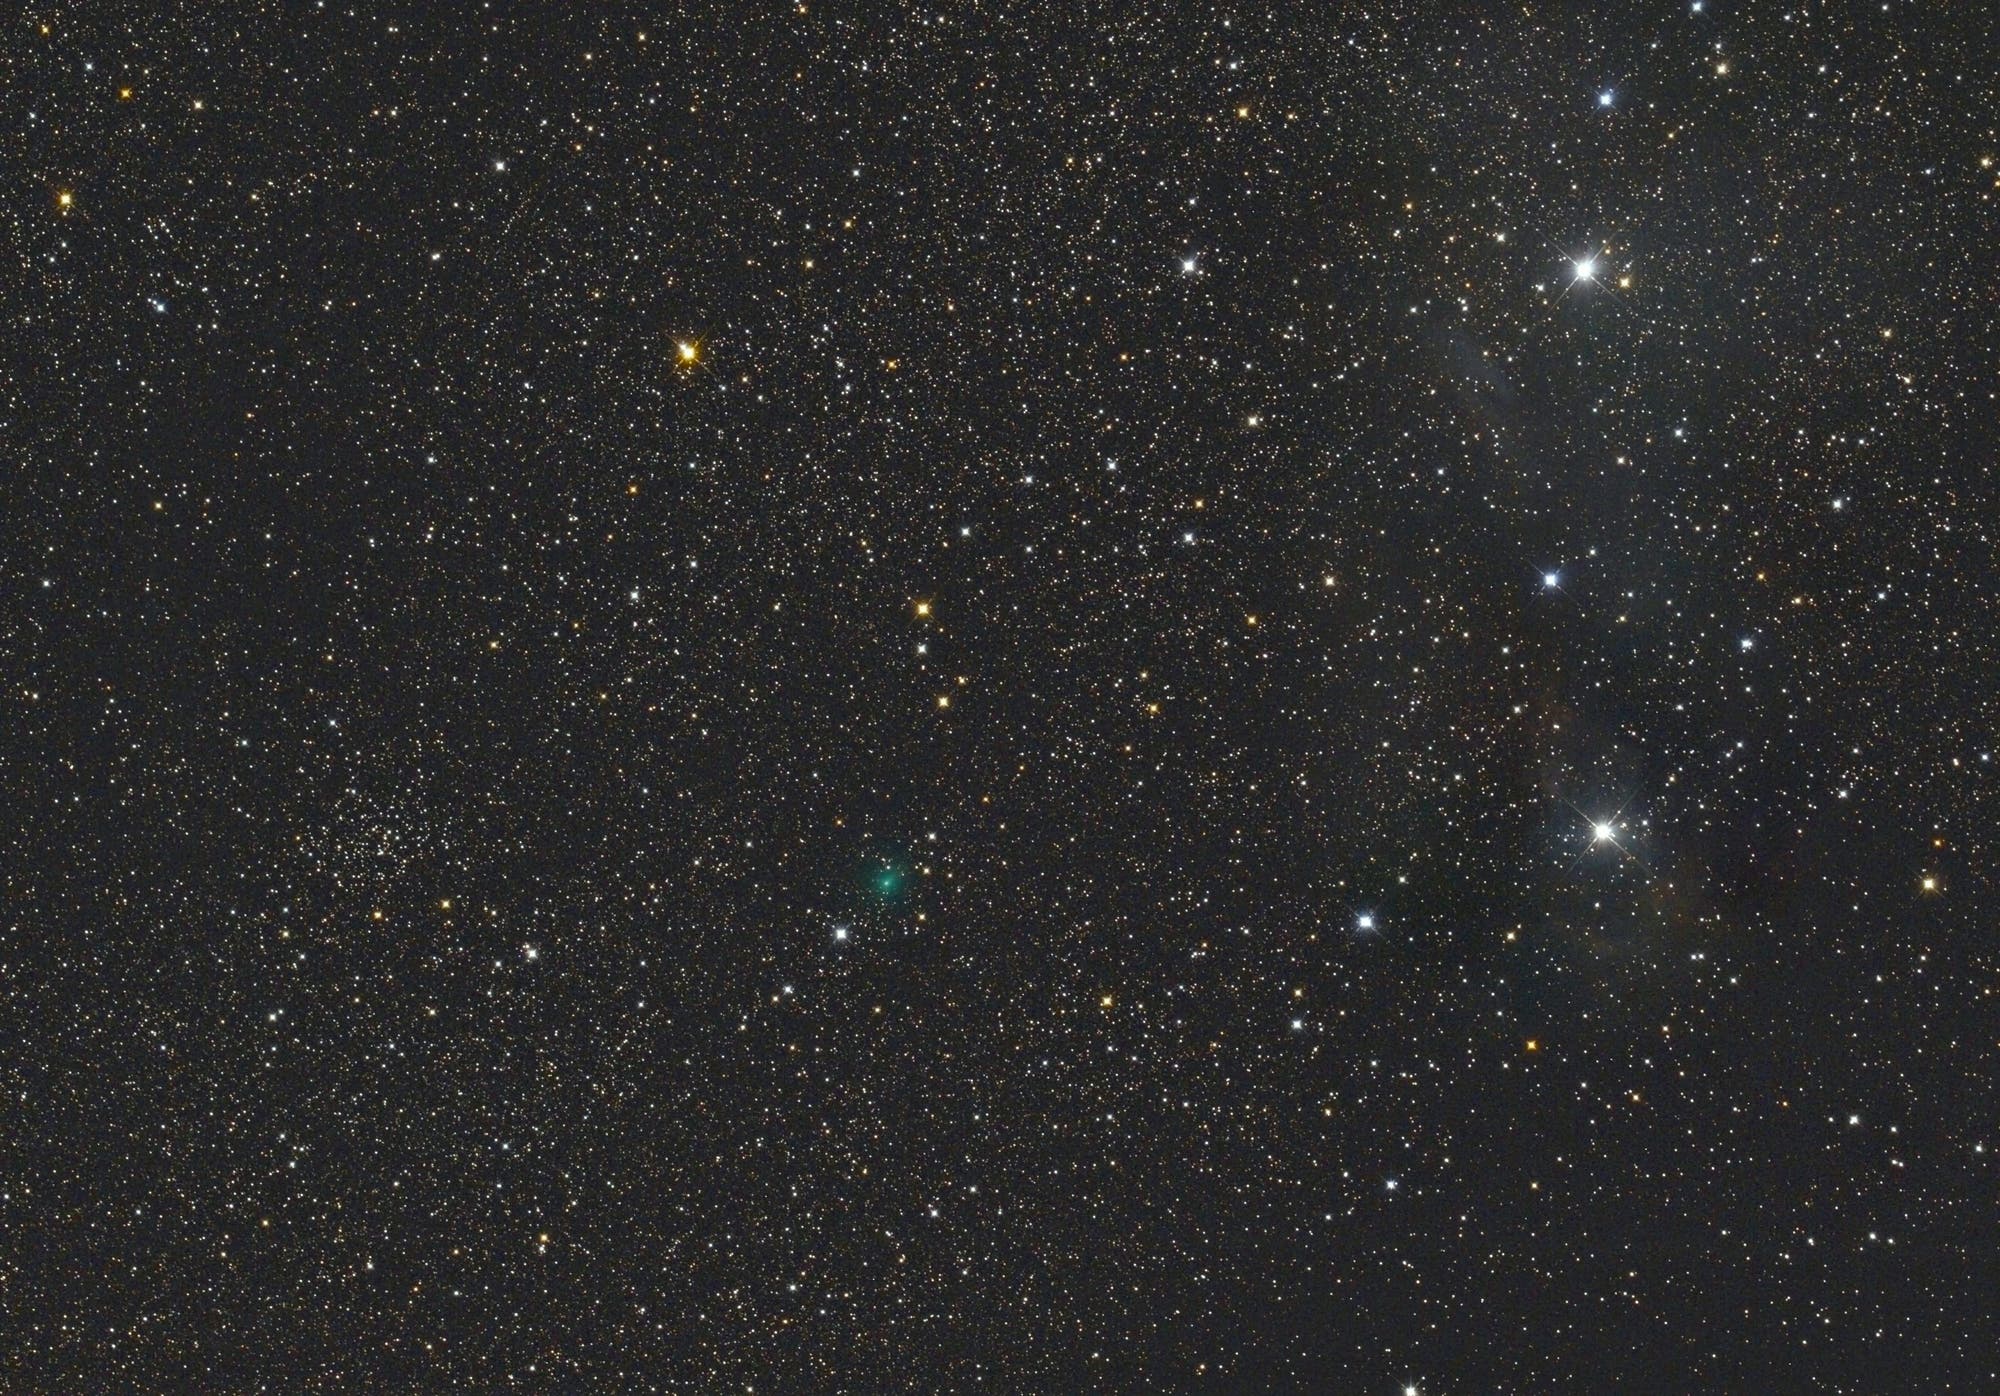 Komet C/2017 S3 (PanSTARRS) bei den offenen Sternhaufen Tombaugh 5 und Vdb 14,15 rechts im Bild